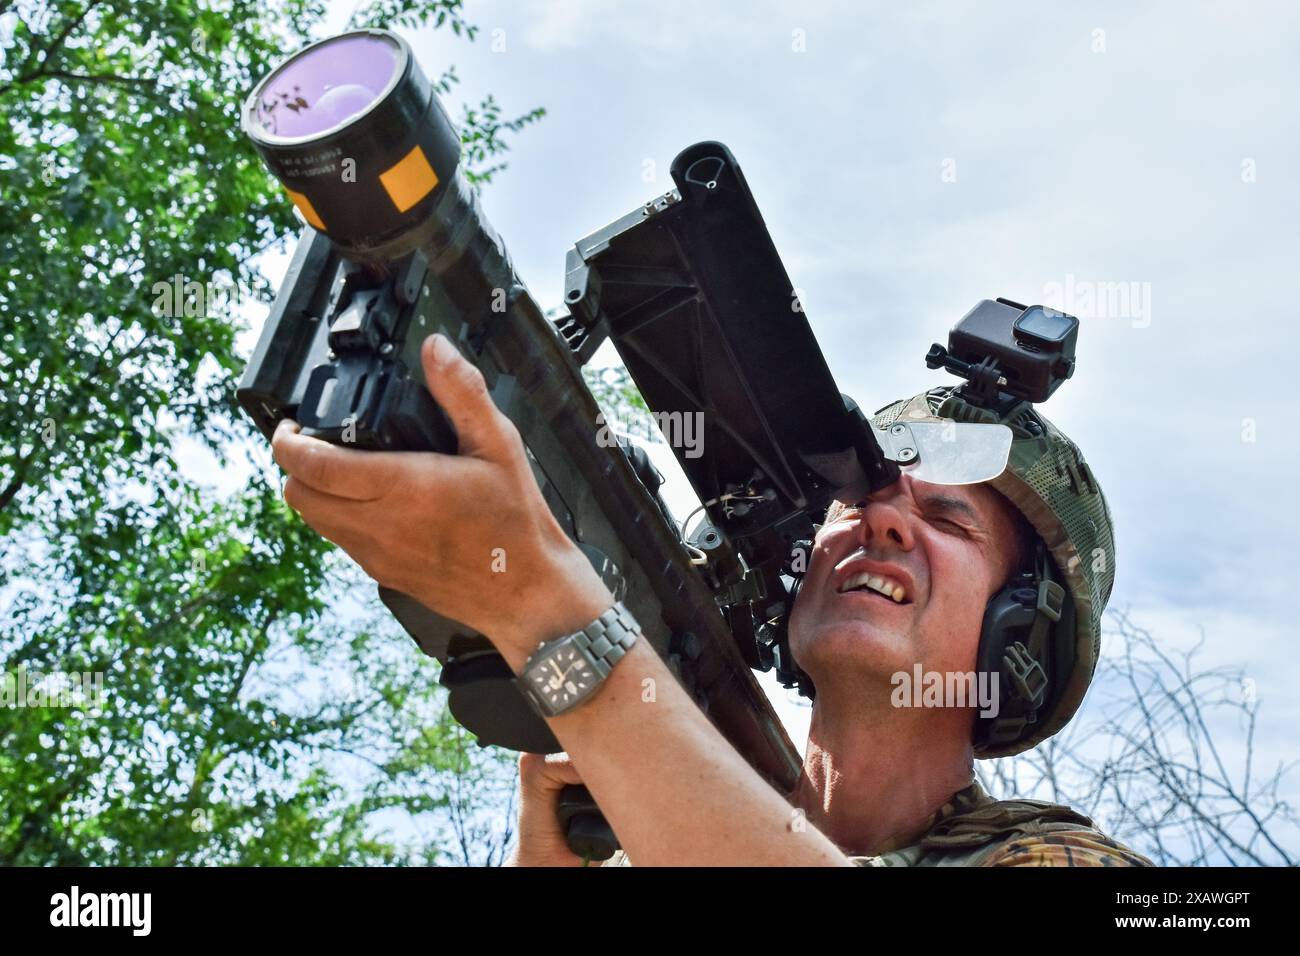 Ein ukrainischer Soldat sucht ein Ziel mit einem US-Stinger-Raketenwerfer an der Front in der Region Zaporischzhia. Das US-Verteidigungsministerium hat ein neues militärisches Hilfspaket für die Ukraine angekündigt. Dieses Paket der Präsidentenbehörde hat einen geschätzten Wert von 225 Millionen Dollar. Mit dem jüngsten Verteidigungspaket wird die Ukraine zusätzliche Fähigkeiten erhalten, um ihre dringendsten Bedürfnisse auf dem Schlachtfeld zu erfüllen, wie Abfangjäger der Luftverteidigung, Artilleriesysteme und Munition, gepanzerte Fahrzeuge und Panzerabwehrwaffen. Stockfoto